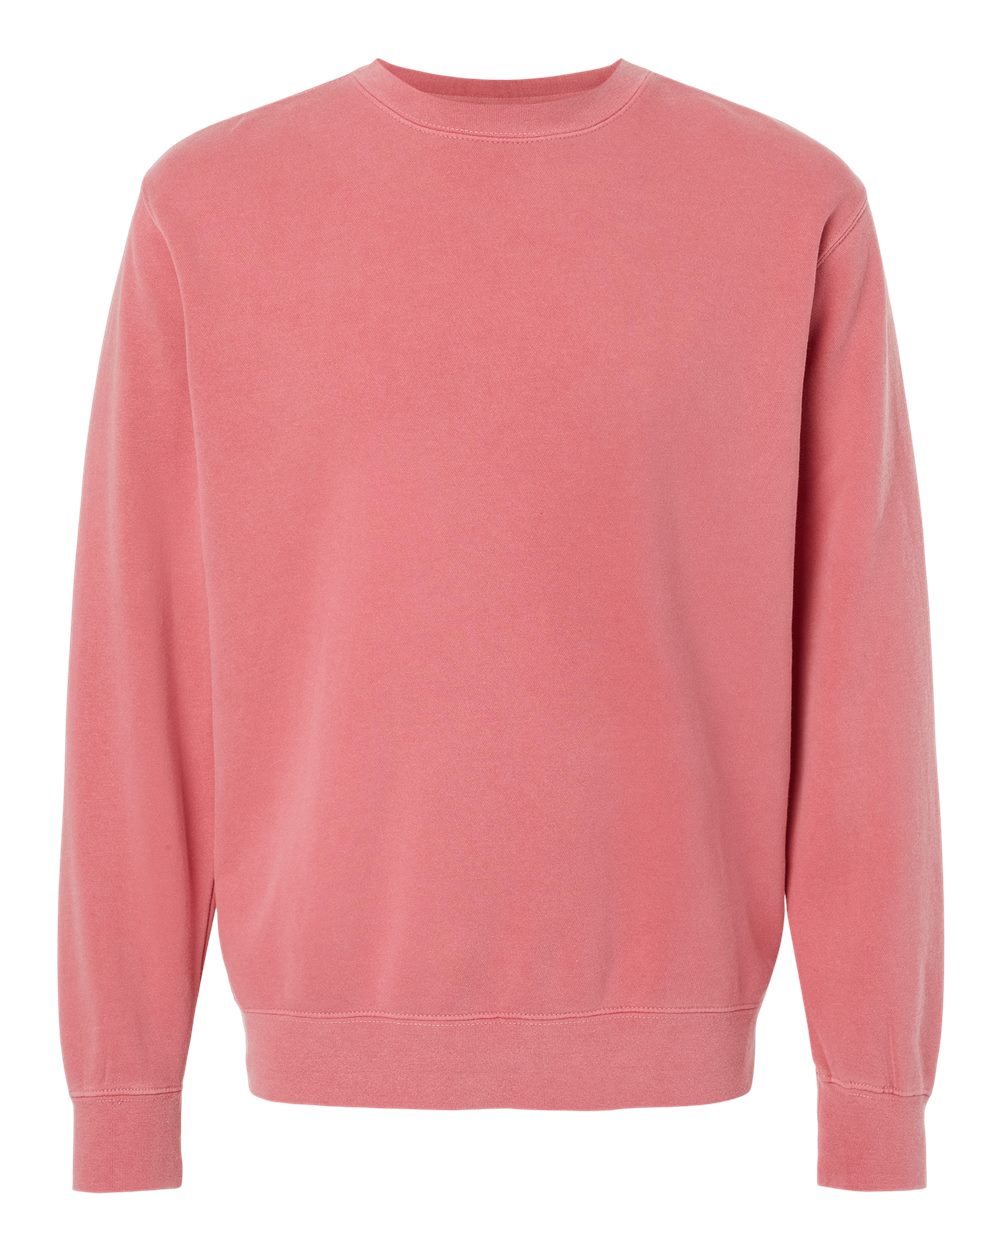 Independent Pigment-Dyed Crewneck Sweatshirt (PRM3500) in Pigment Pink